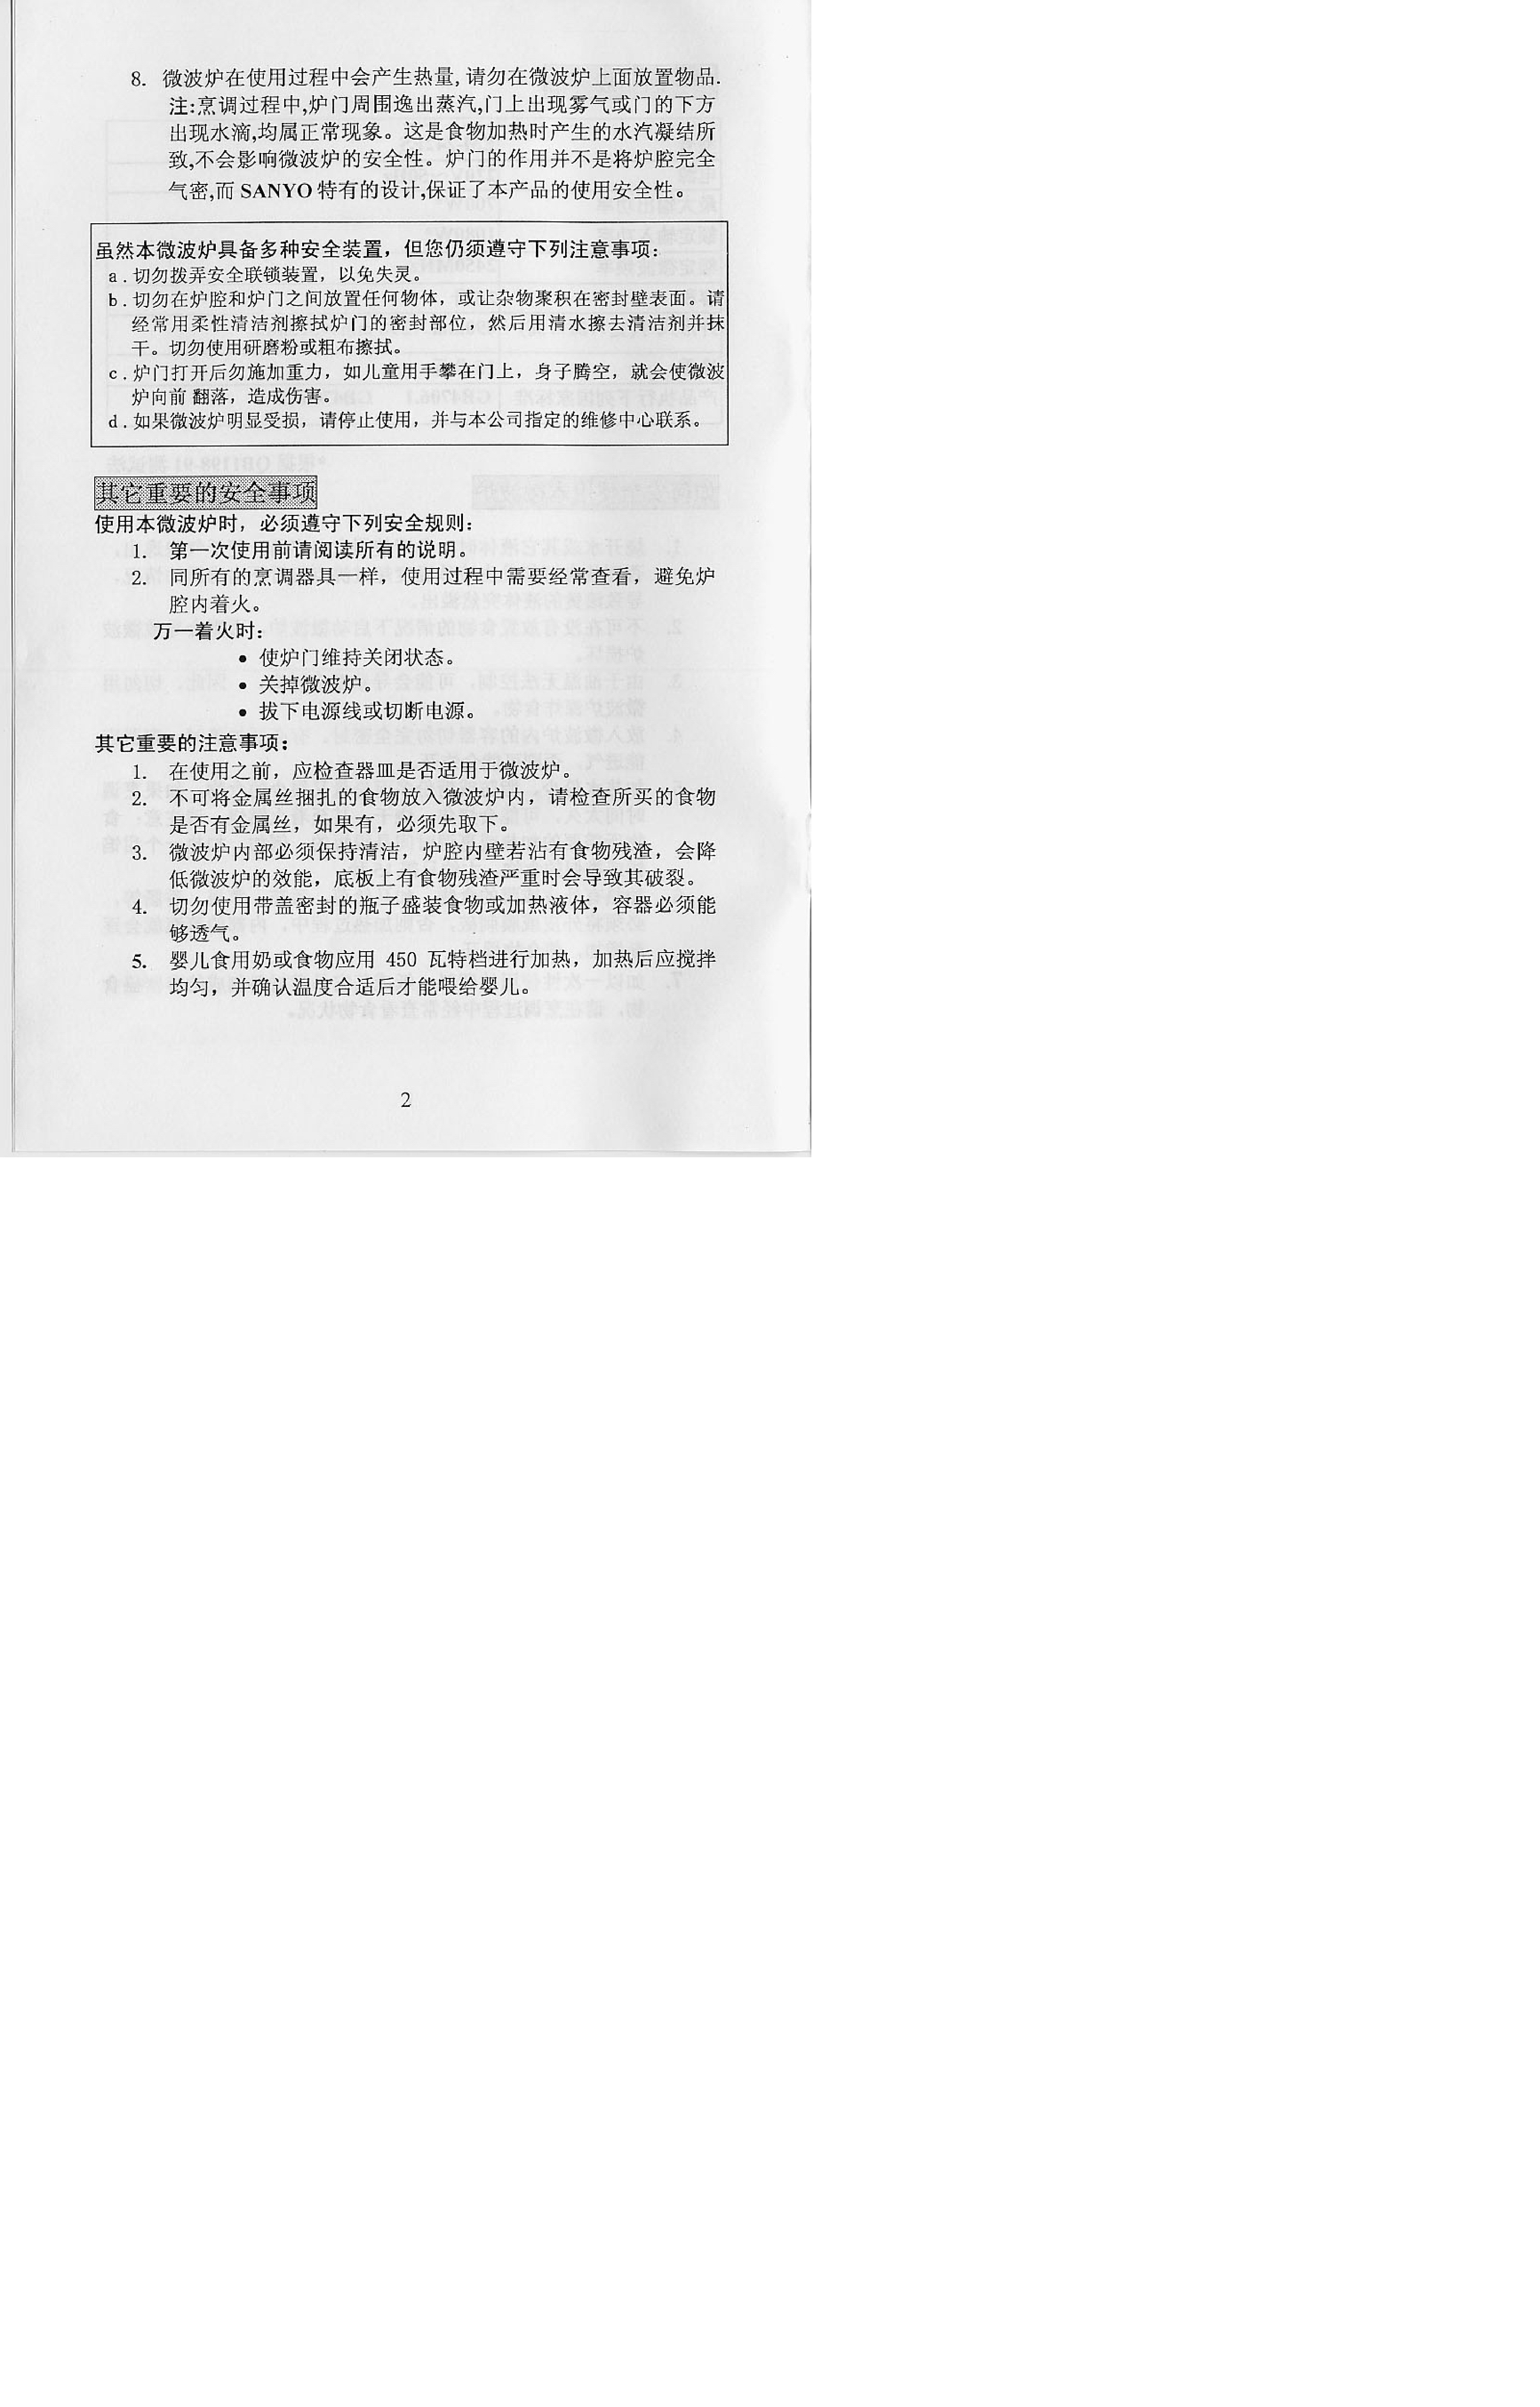 三洋 Sanyo EM-242ES 说明书 第2页